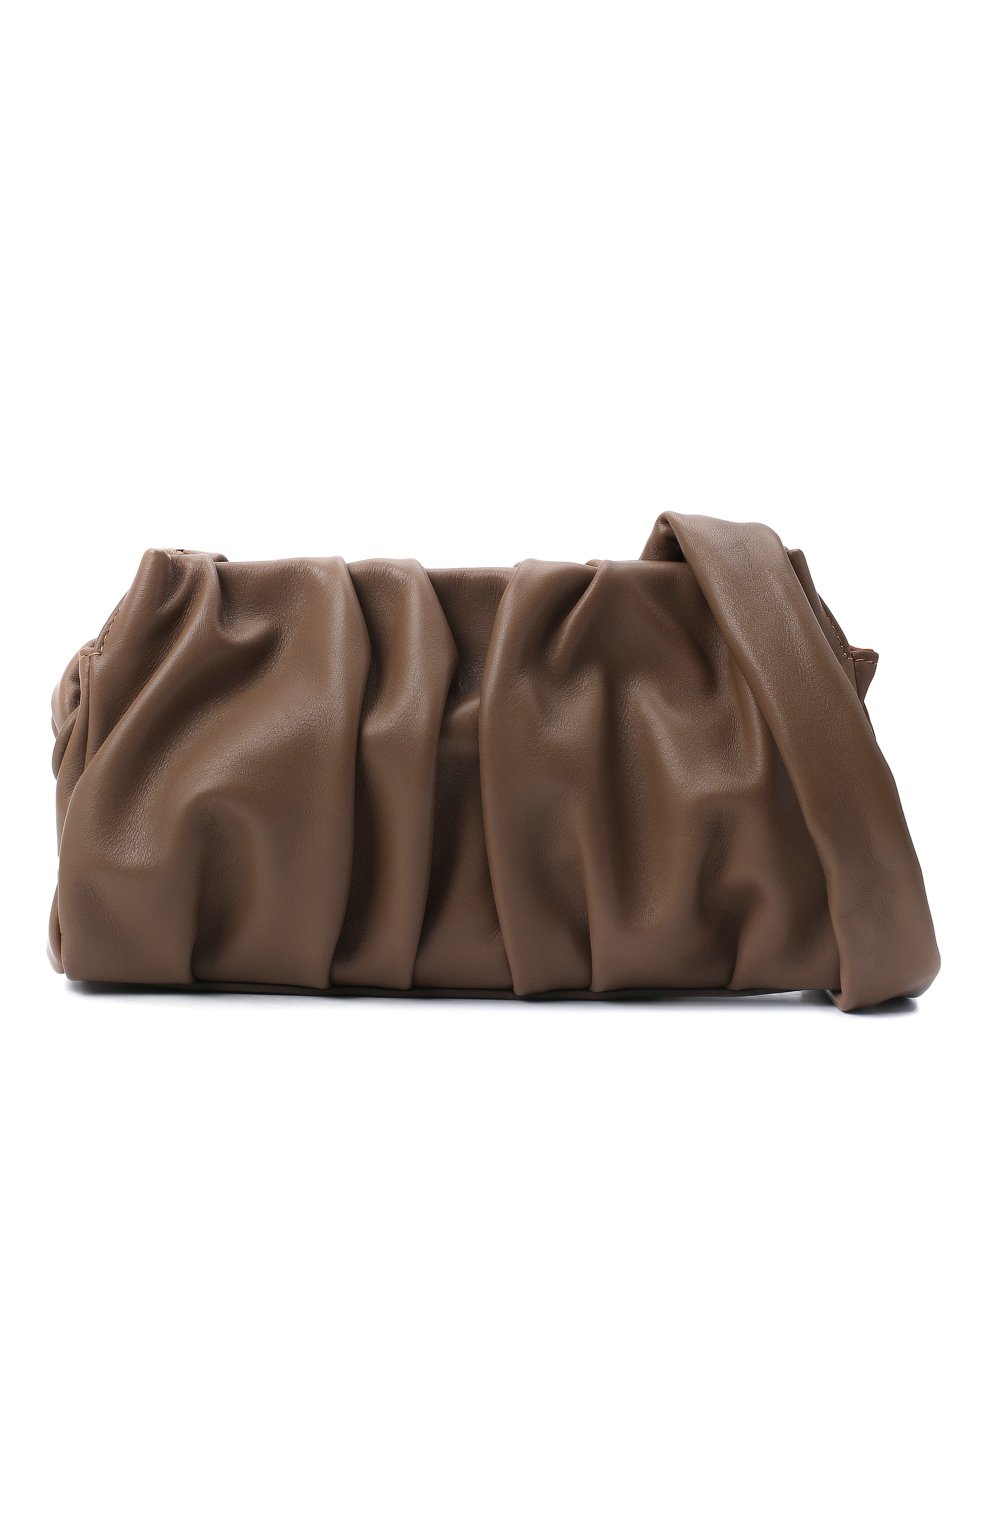 Женская сумка vague small ELLEME темно-коричневого цвета, арт. VAGUE/LEATHER | Фото 5 (Сумки-технические: Сумки через плечо, Сумки top-handle; Материал: Натуральная кожа; Размер: small)